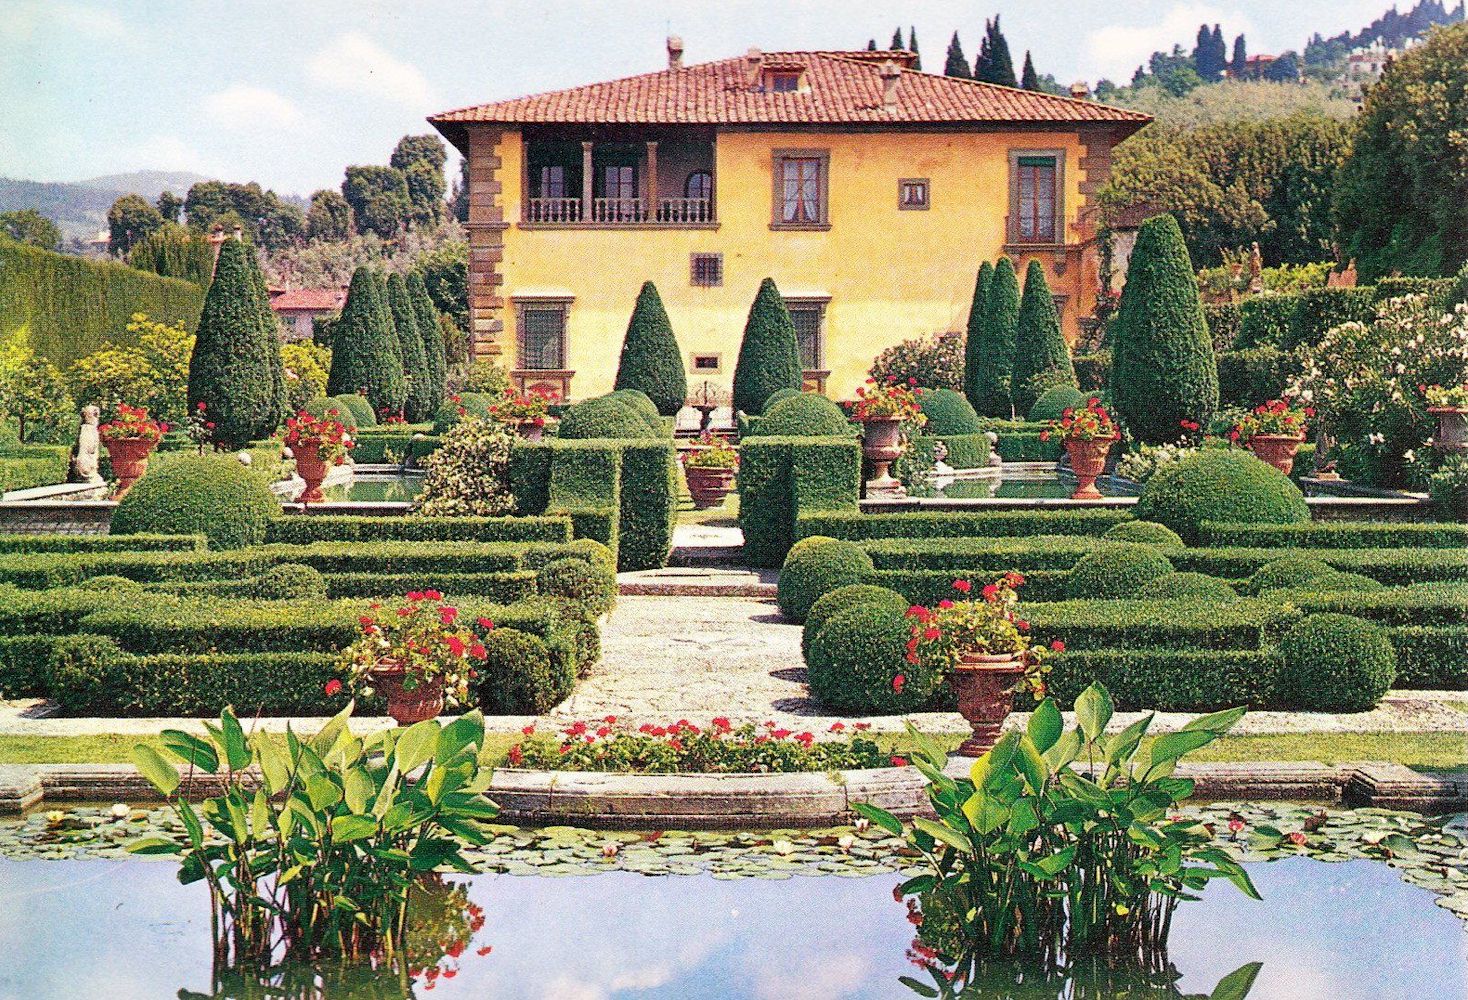 Gardens of Villa Gamberaia